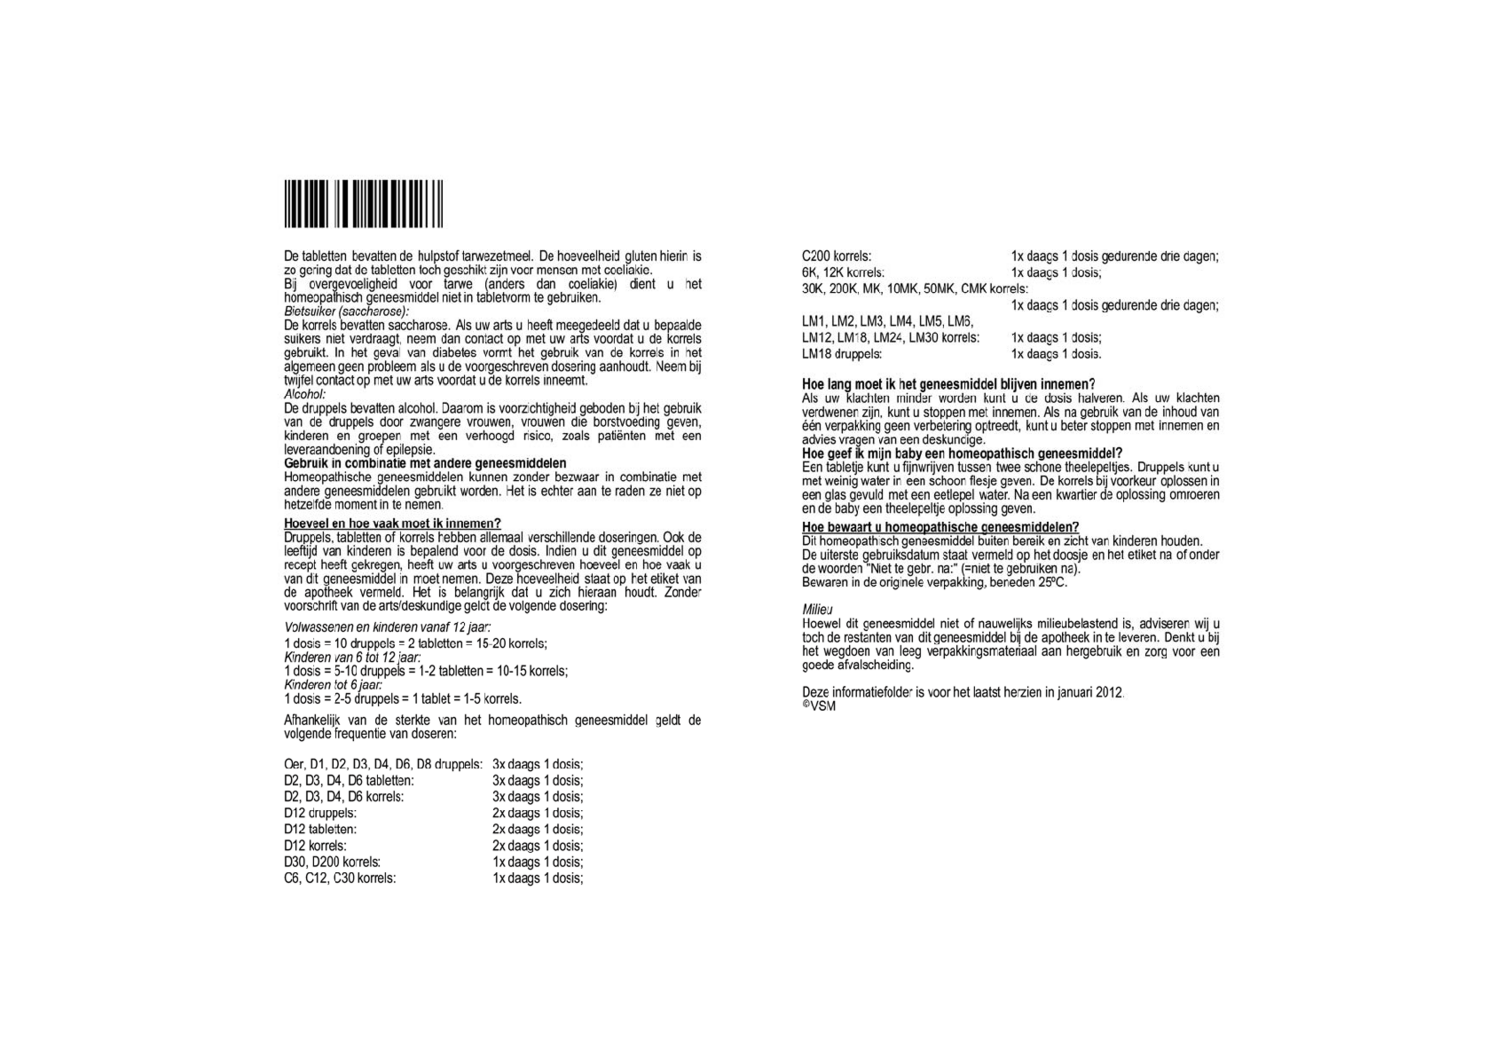 Sepia Officinalis D12 Tabletten afbeelding van document #2, bijsluiter